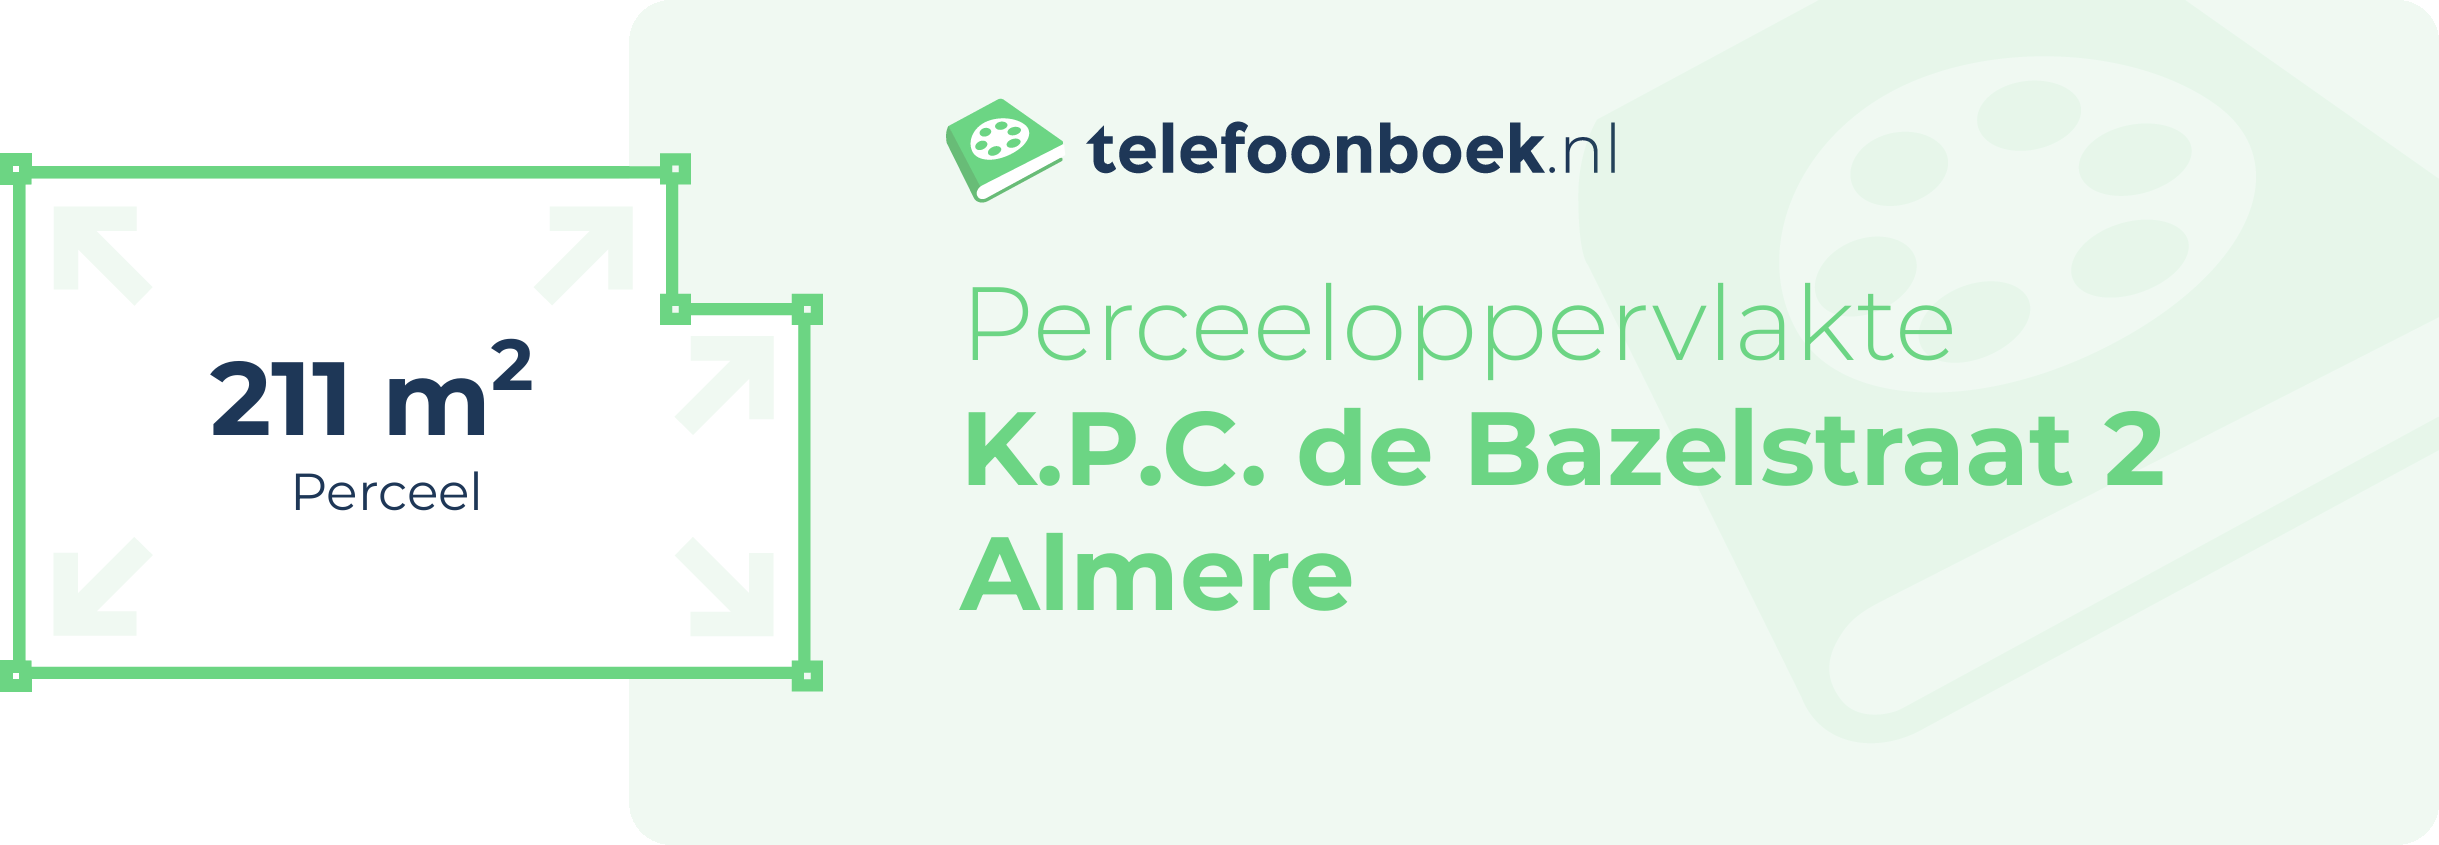 Perceeloppervlakte K.P.C. De Bazelstraat 2 Almere